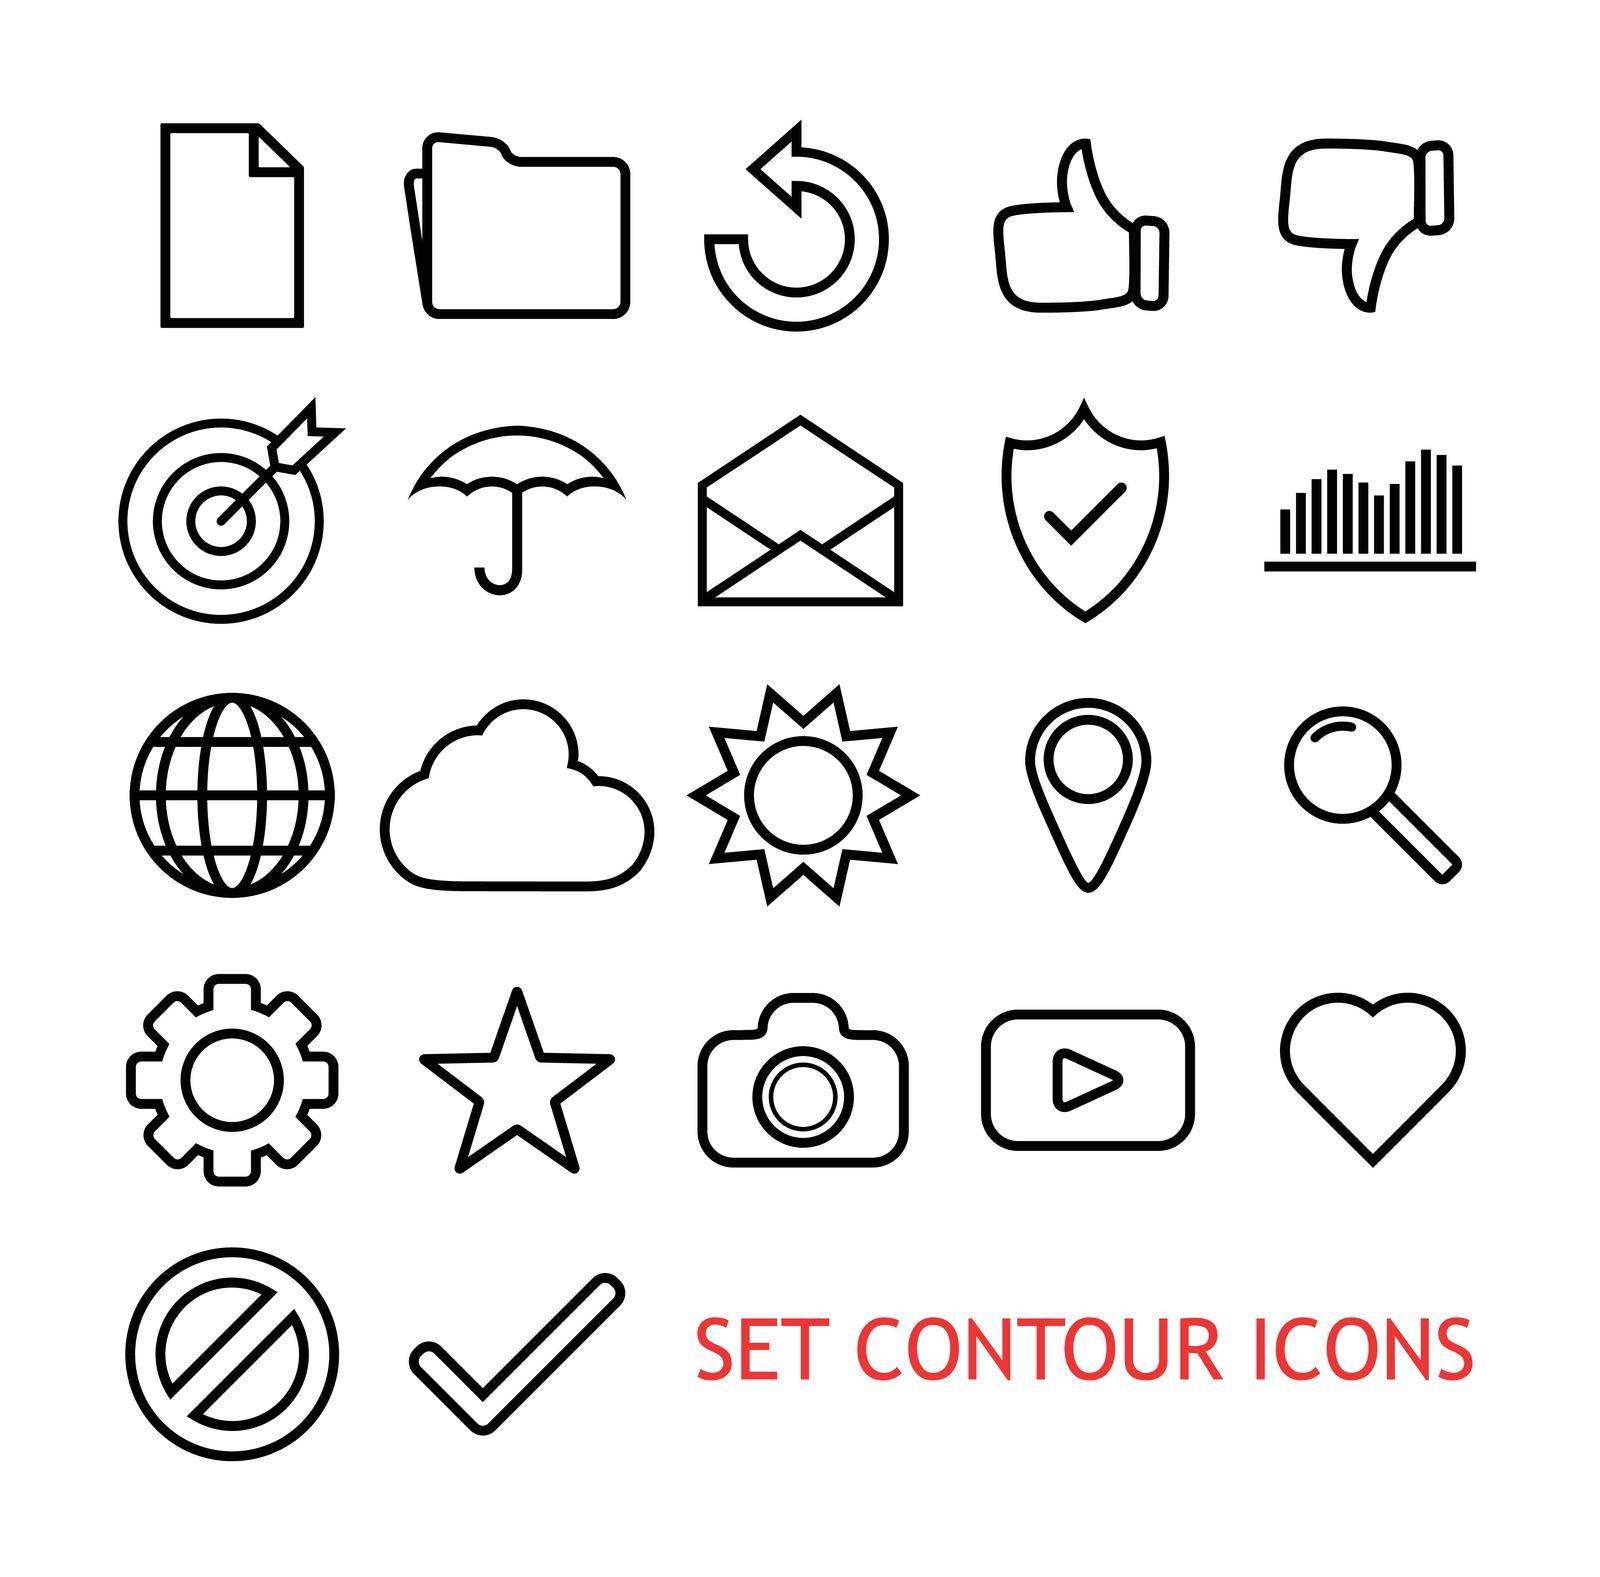 Set Contour Icons for Web Site, Vector Illustration